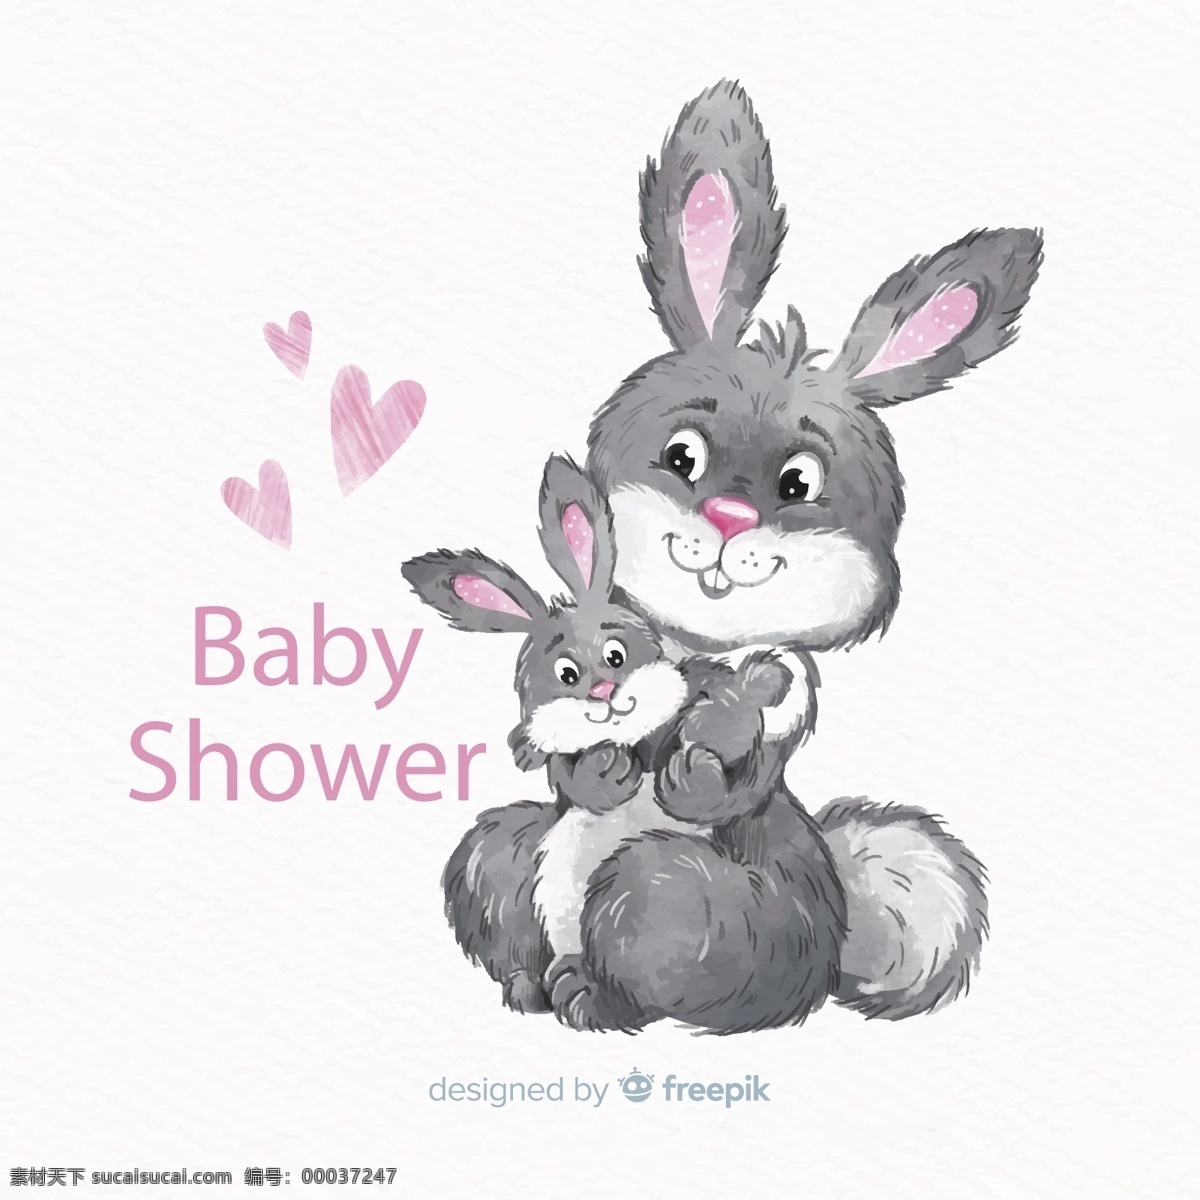 兔子 迎 婴 派对 海报 爱心 彩绘 迎婴 矢量图 矢量 高清图片